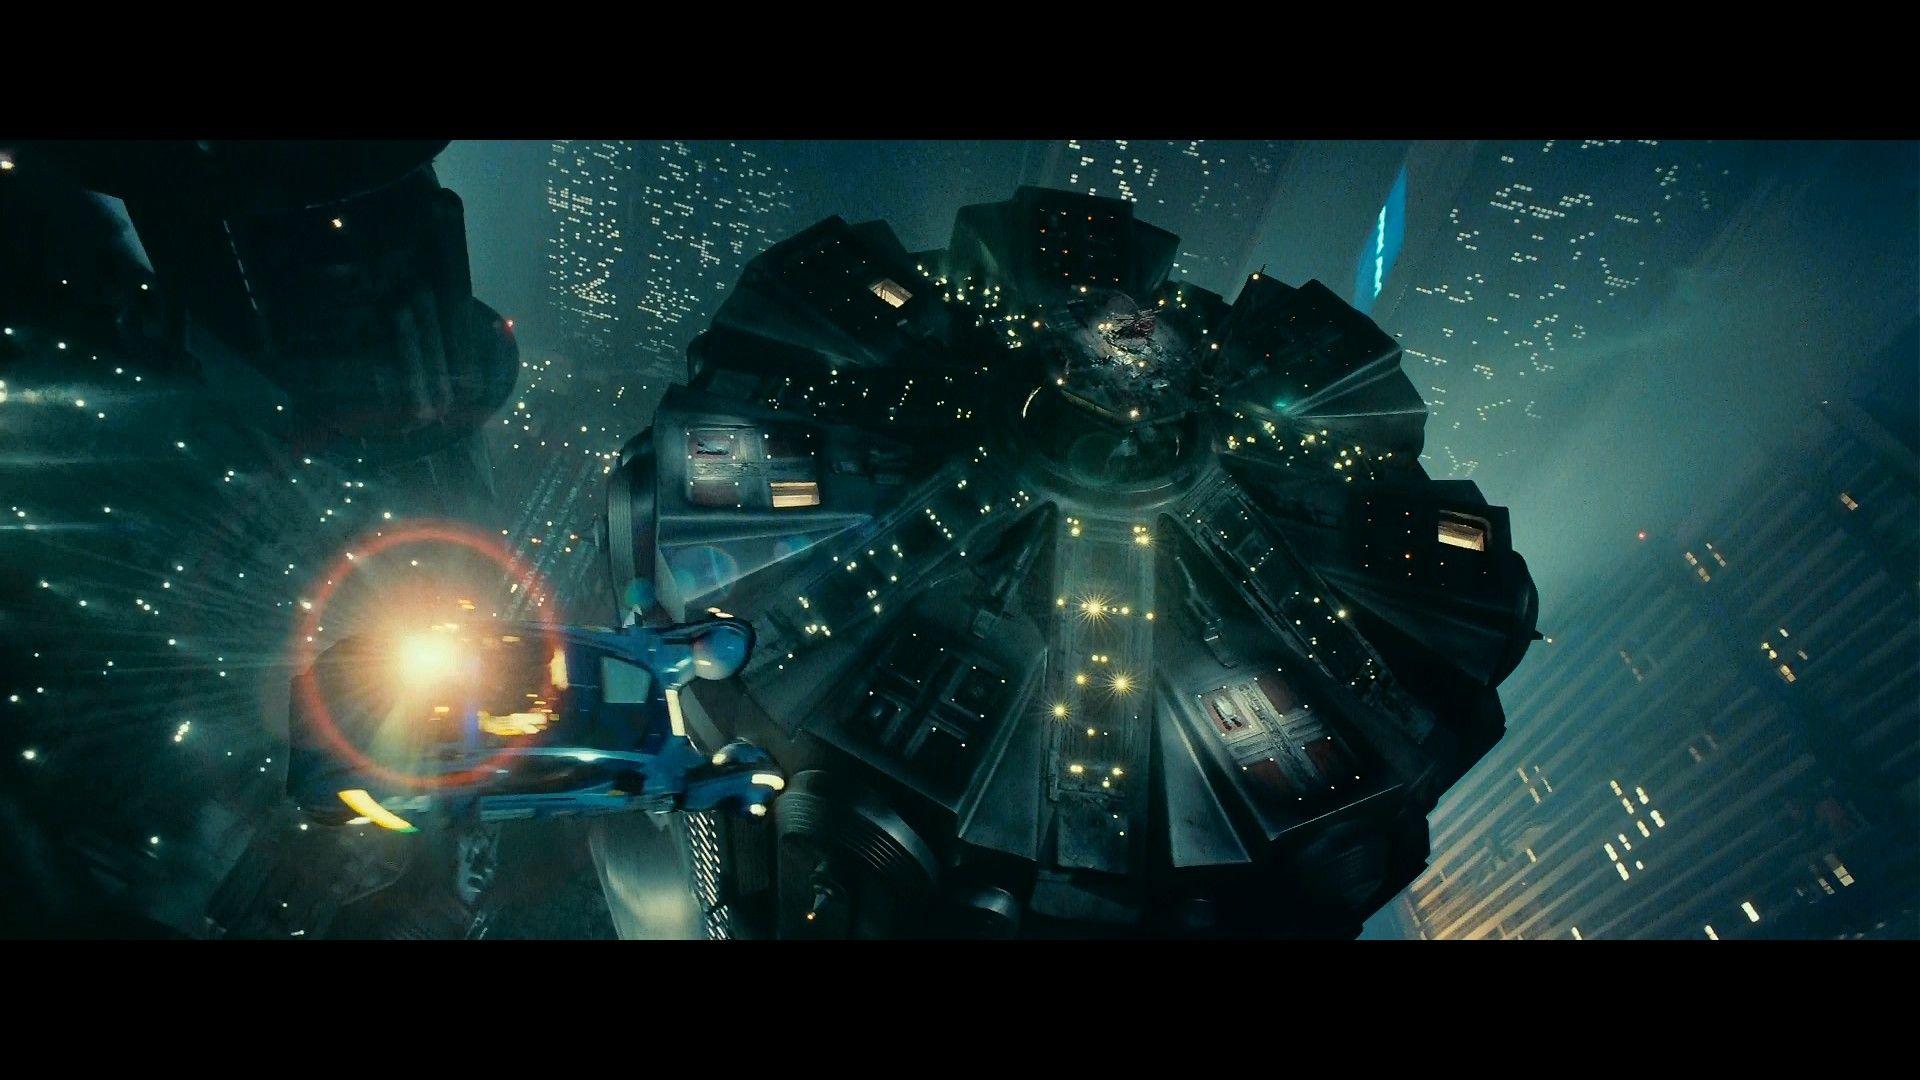 BLADE RUNNER Drama Sci Fi Thriller Action City Spaceship Fs